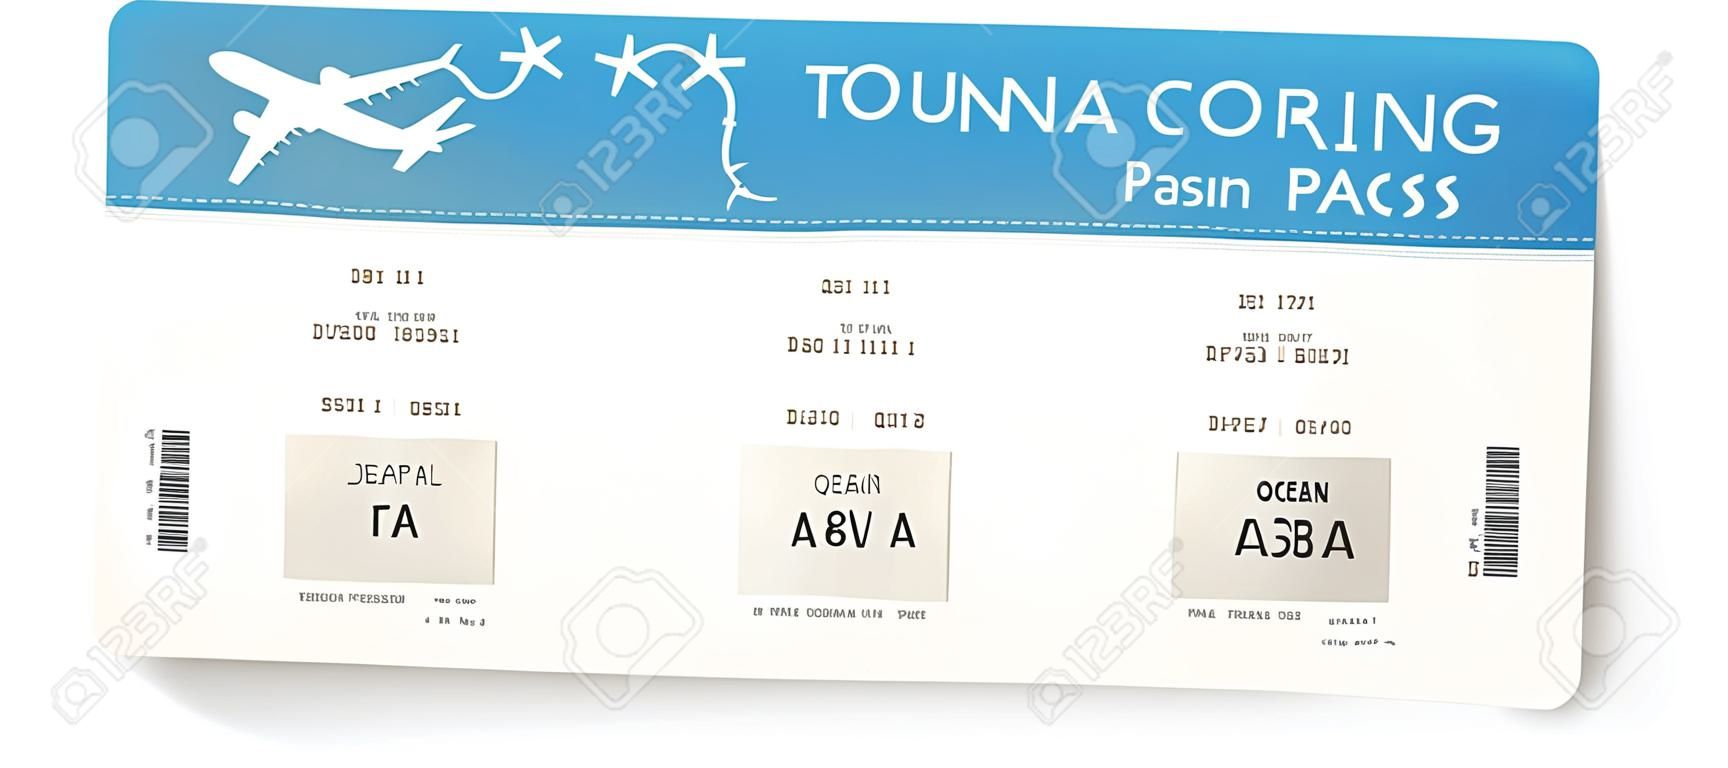 Bordkarte oder Flugticket der Fluggesellschaft. Muster der Bordkarte für den Flug von New York nach Punta Cana. Konzept der Reise zum Ozean oder Meer. Vektor-Illustration